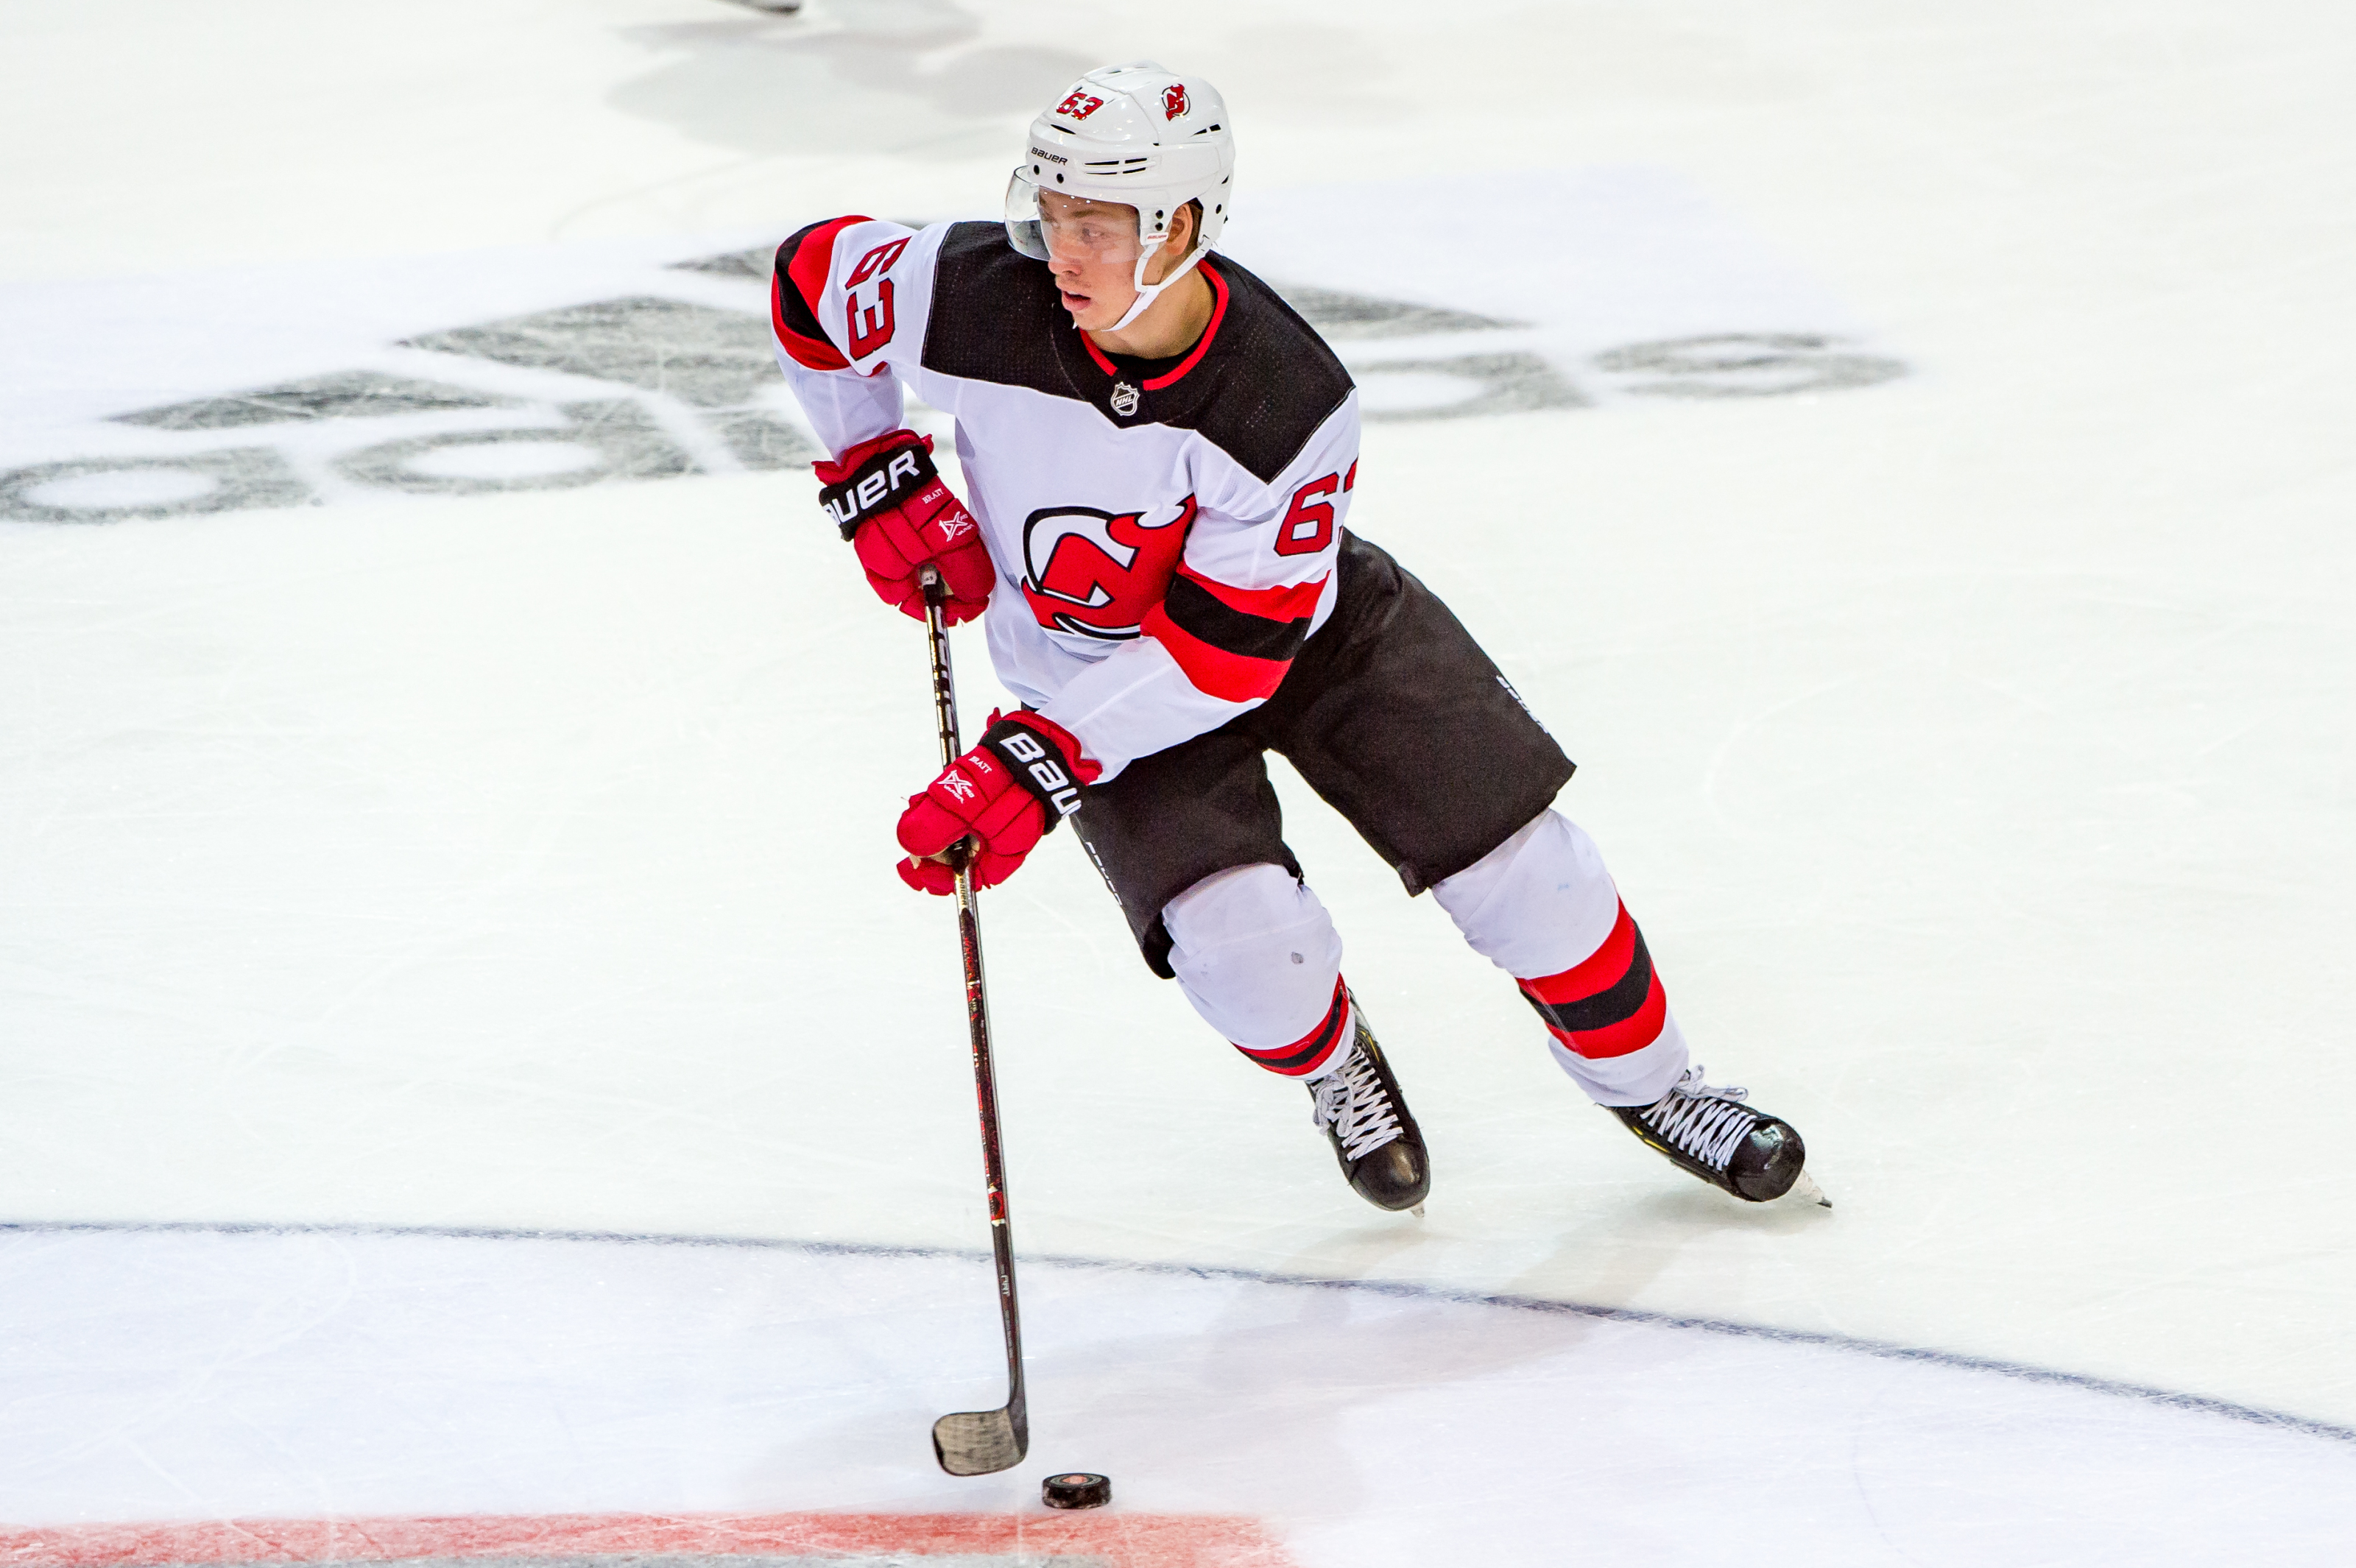 New Jersey Devils: Jesper Bratt's Injury Could Lead To Opportunity